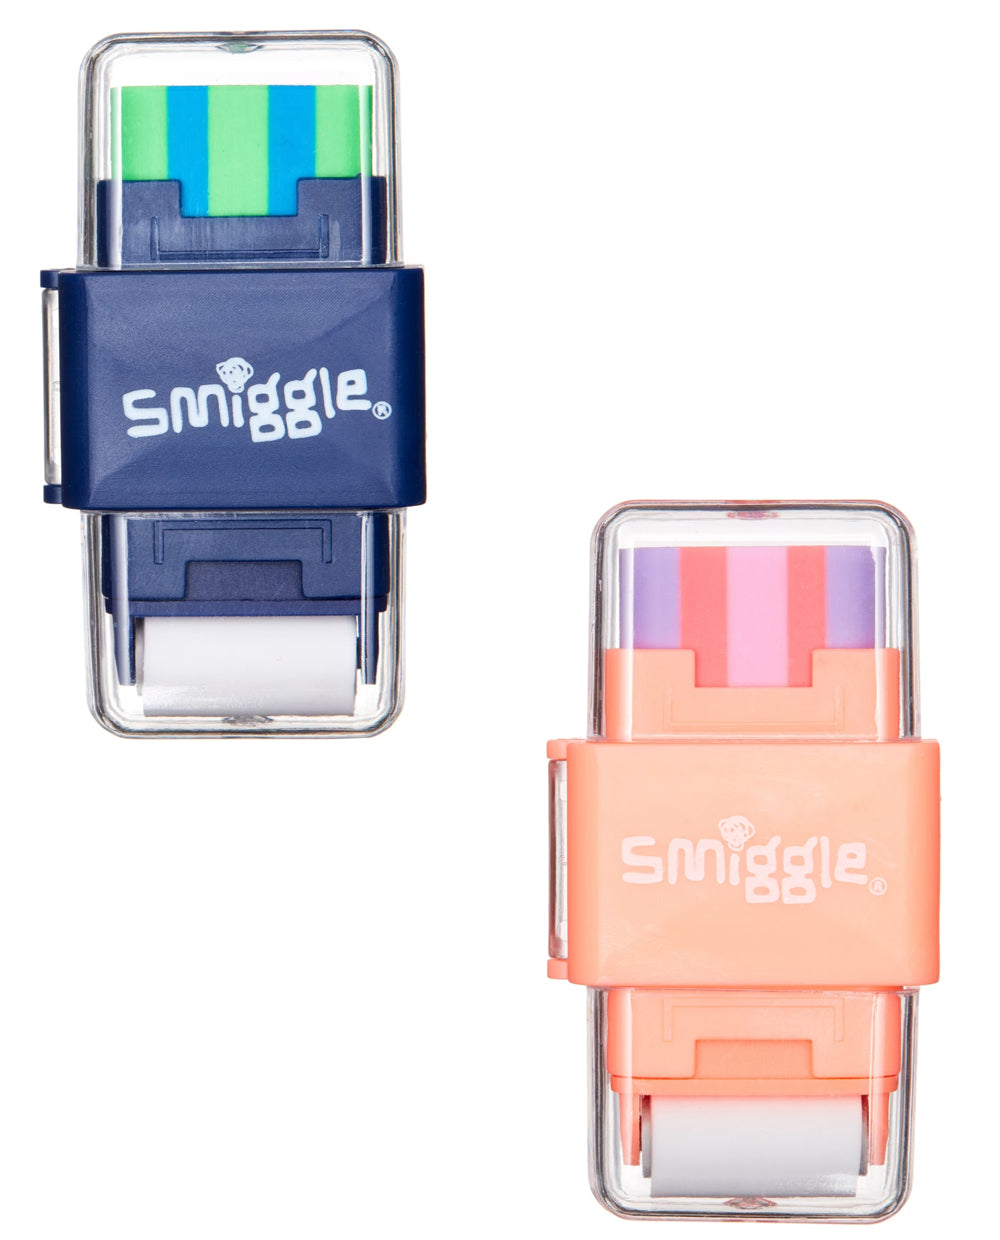 Smiggle Eraser and Pencil Sharpener